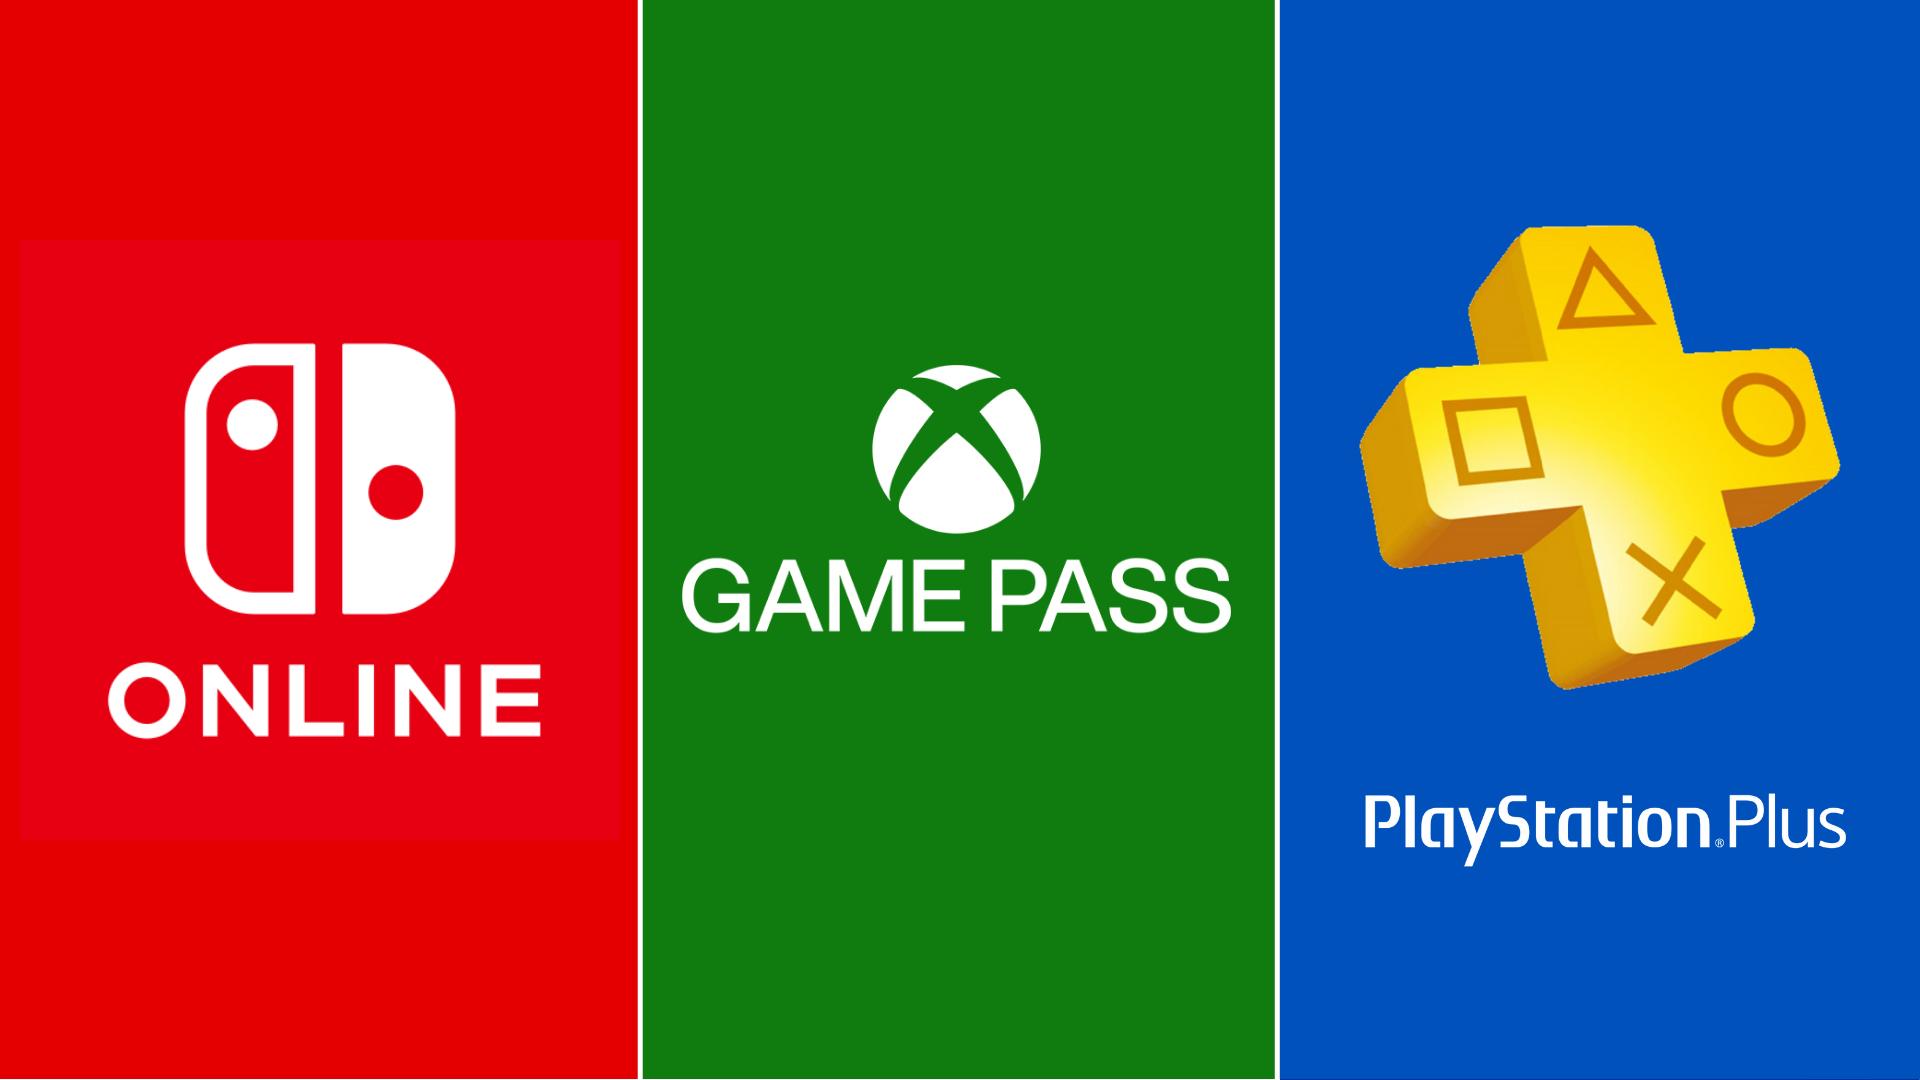 GTA Plus: dois jogos clássicos da franquia ficam grátis no Android